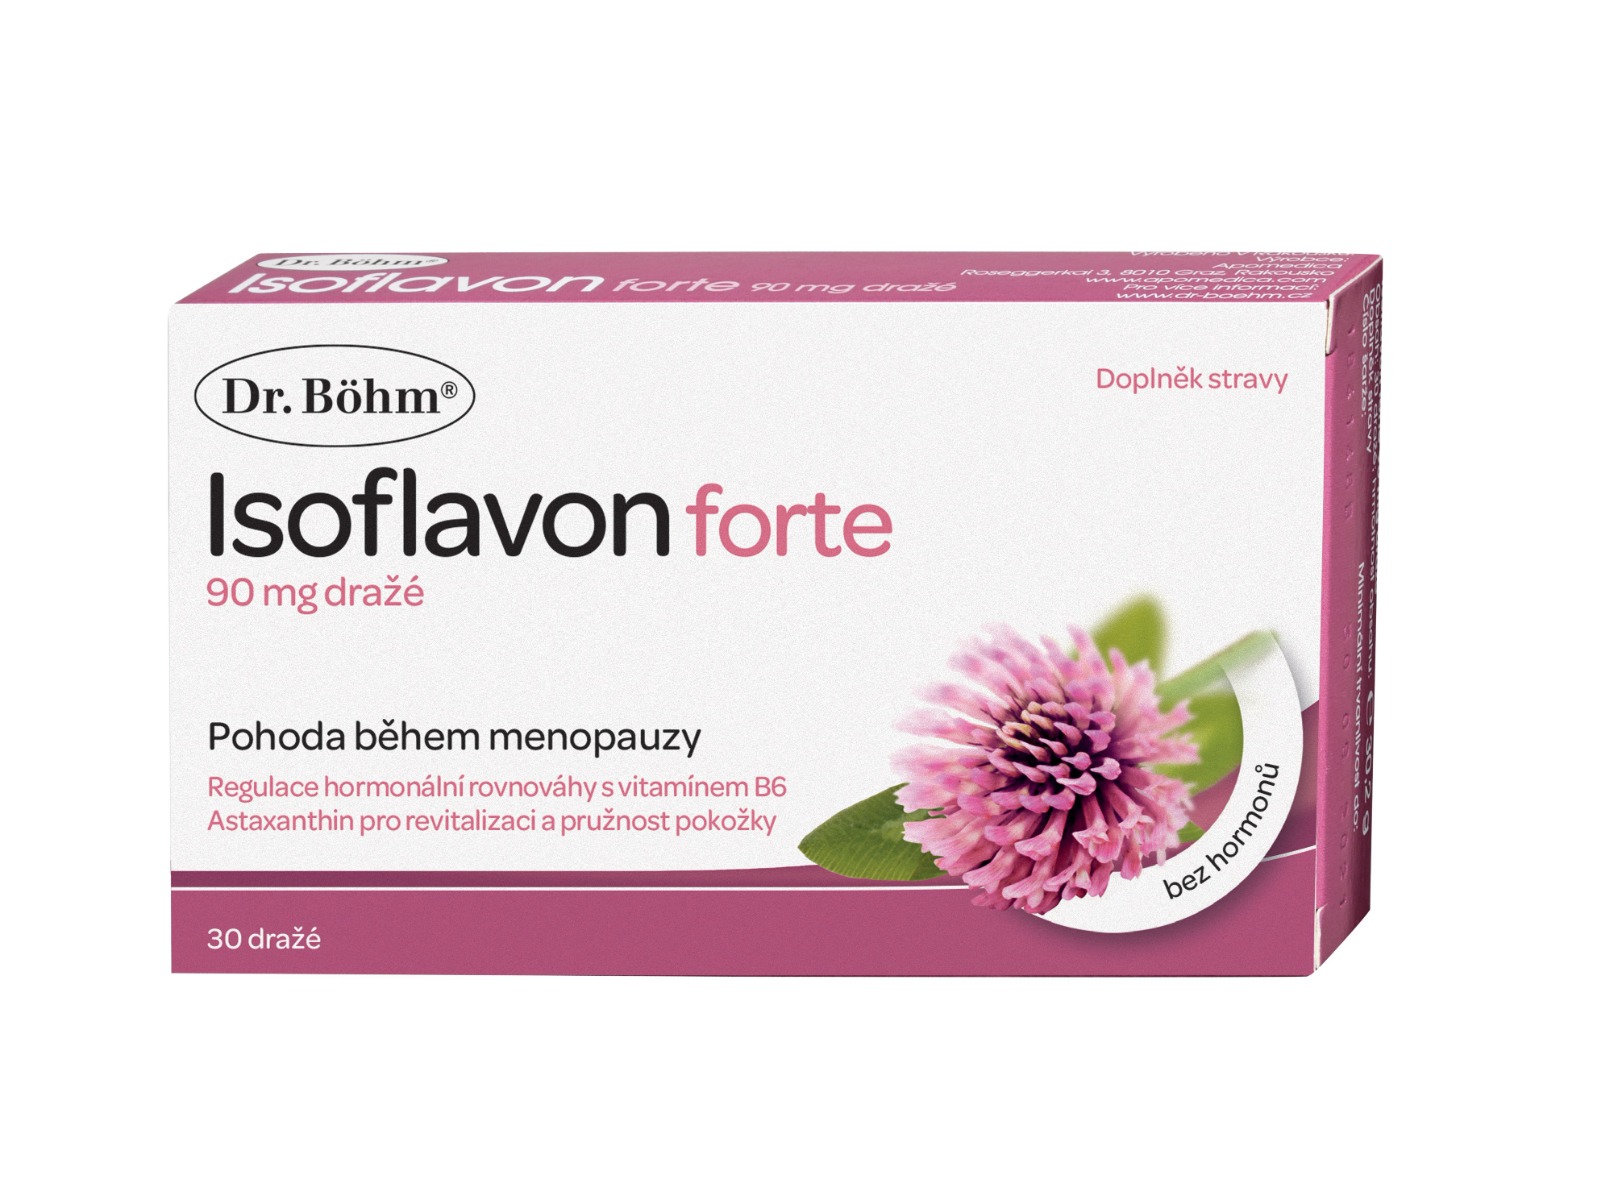 Dr. Böhm Isoflavon forte 90 mg 30 dražé Dr. Böhm